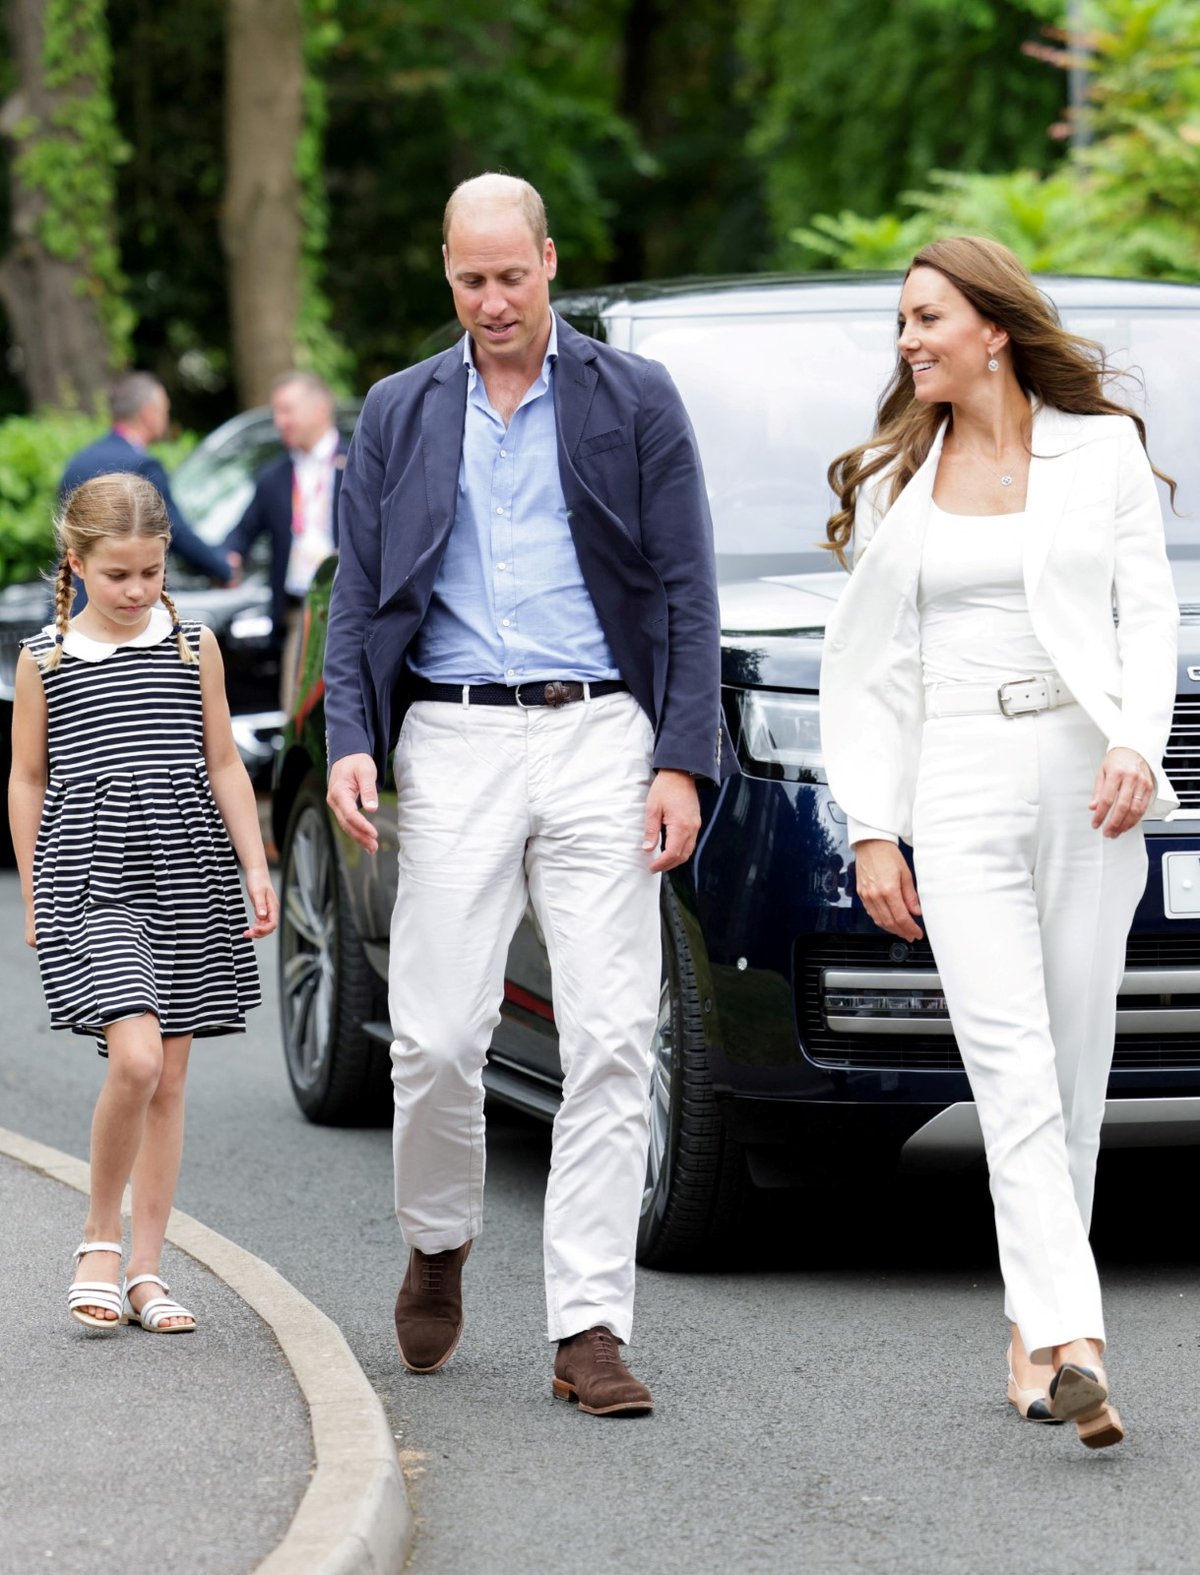 Charlotte se s maminkou Kate a taťkou Williamem účastnila Her Commonwealthu v Birminghamu.